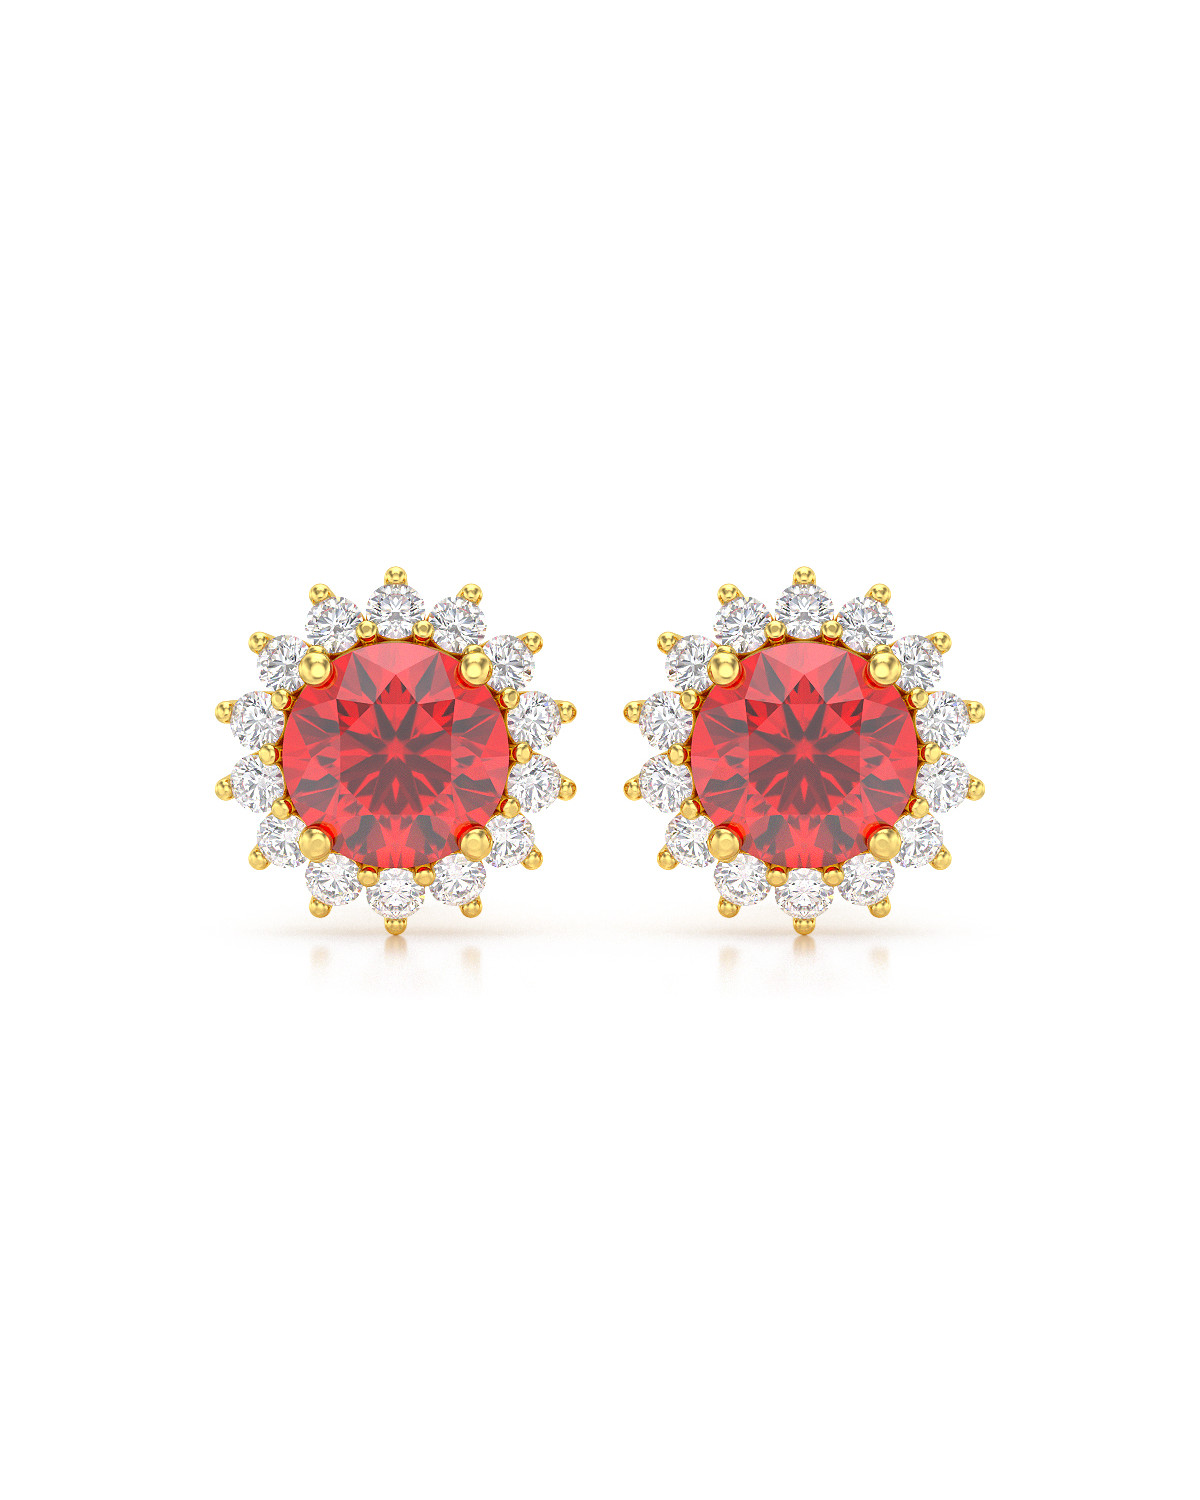 14K Gold Ruby Diamonds Earrings